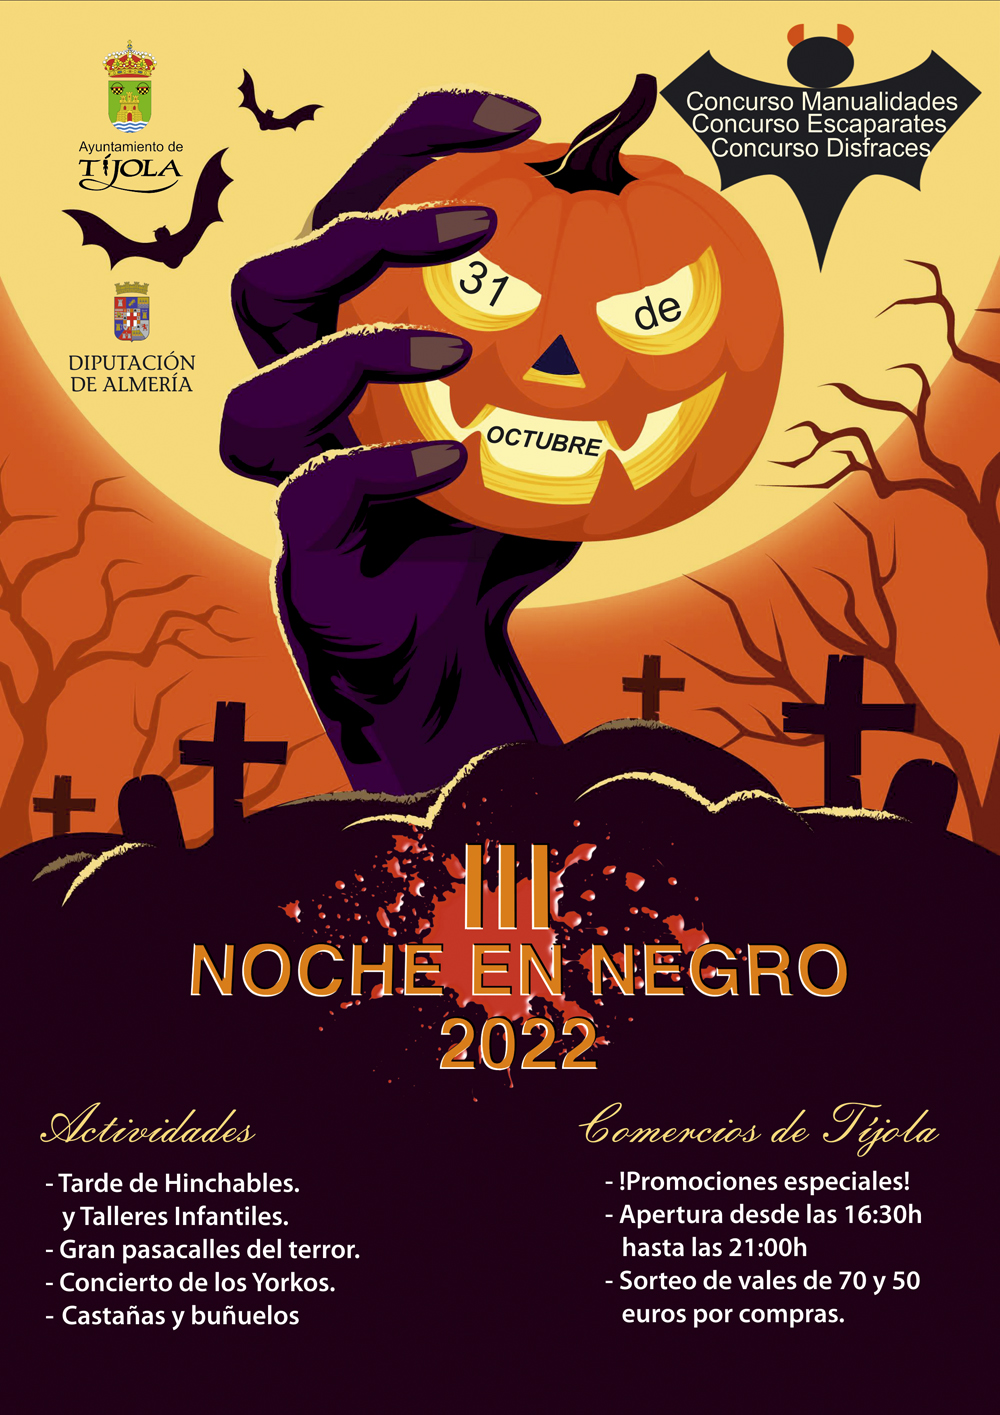 Imagen del Cartel de la Noche en Negro Tíjola 2022. Imagen de Mano con calabaza de Halloween saliendo de la tierra al fondo de la imagen. Y enumeración de actividades.